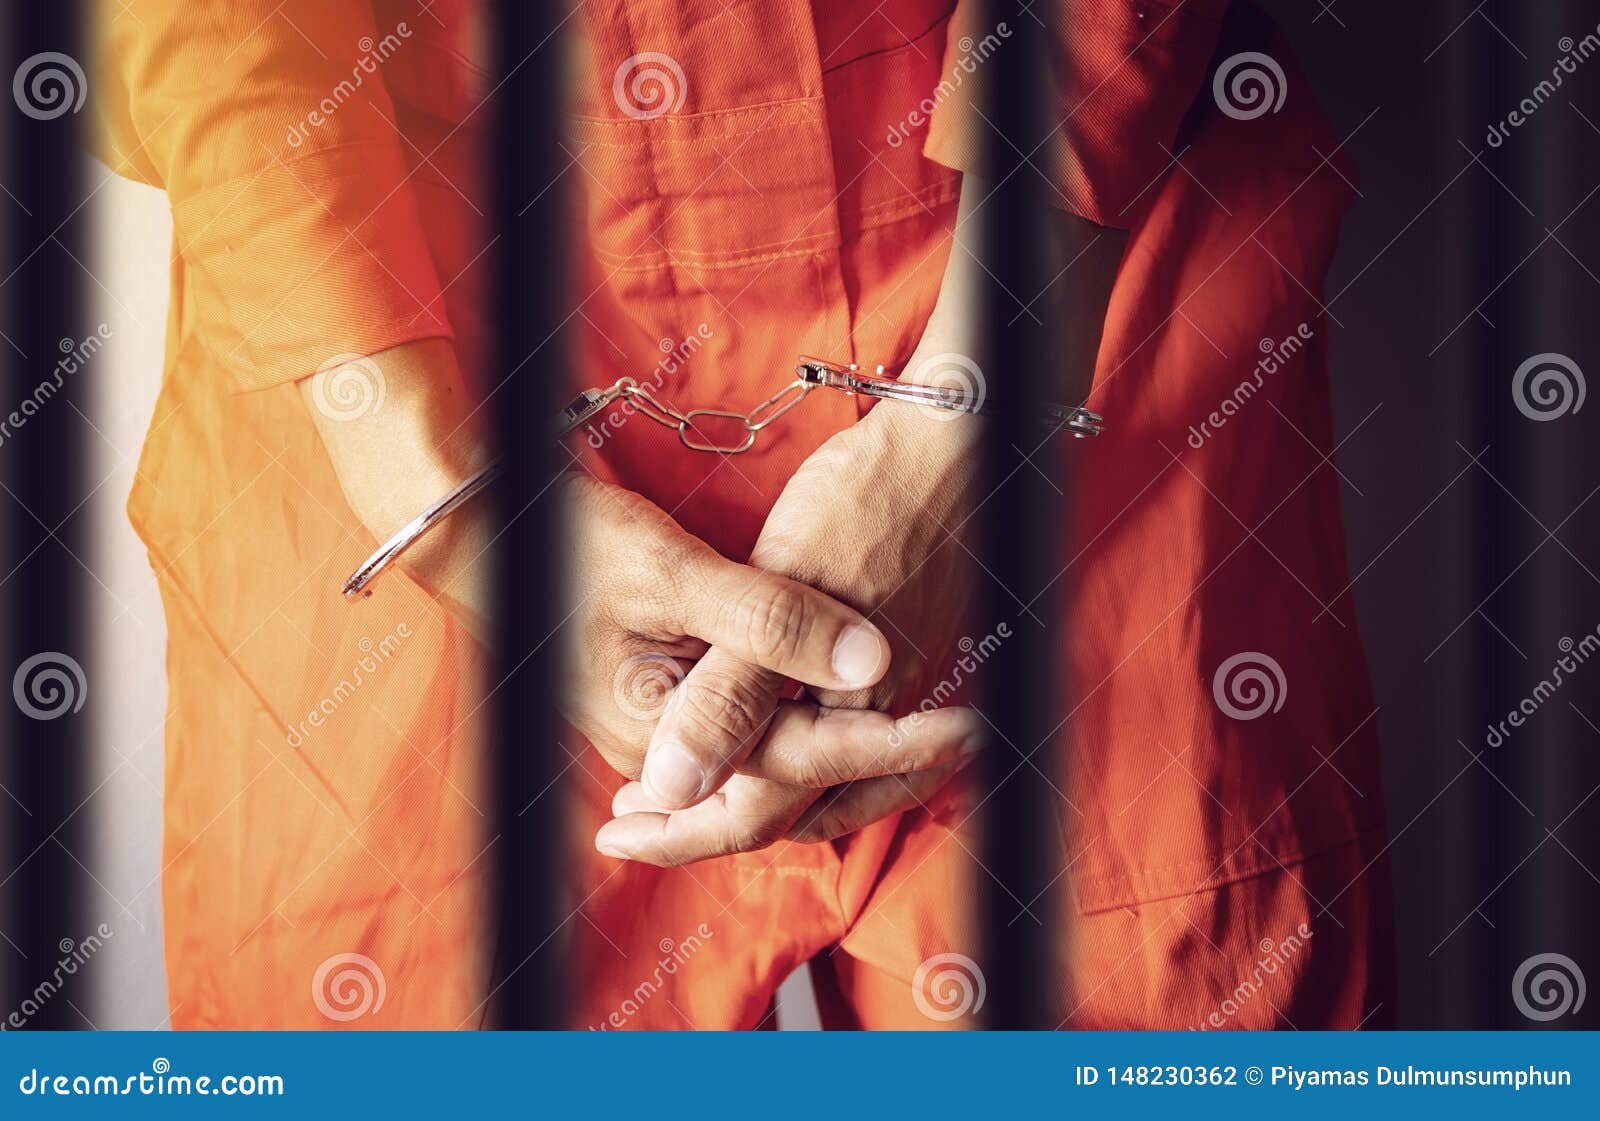 Allison in a Prison Jumpsuit in a Restraint Chair by Dsco42 on DeviantArt